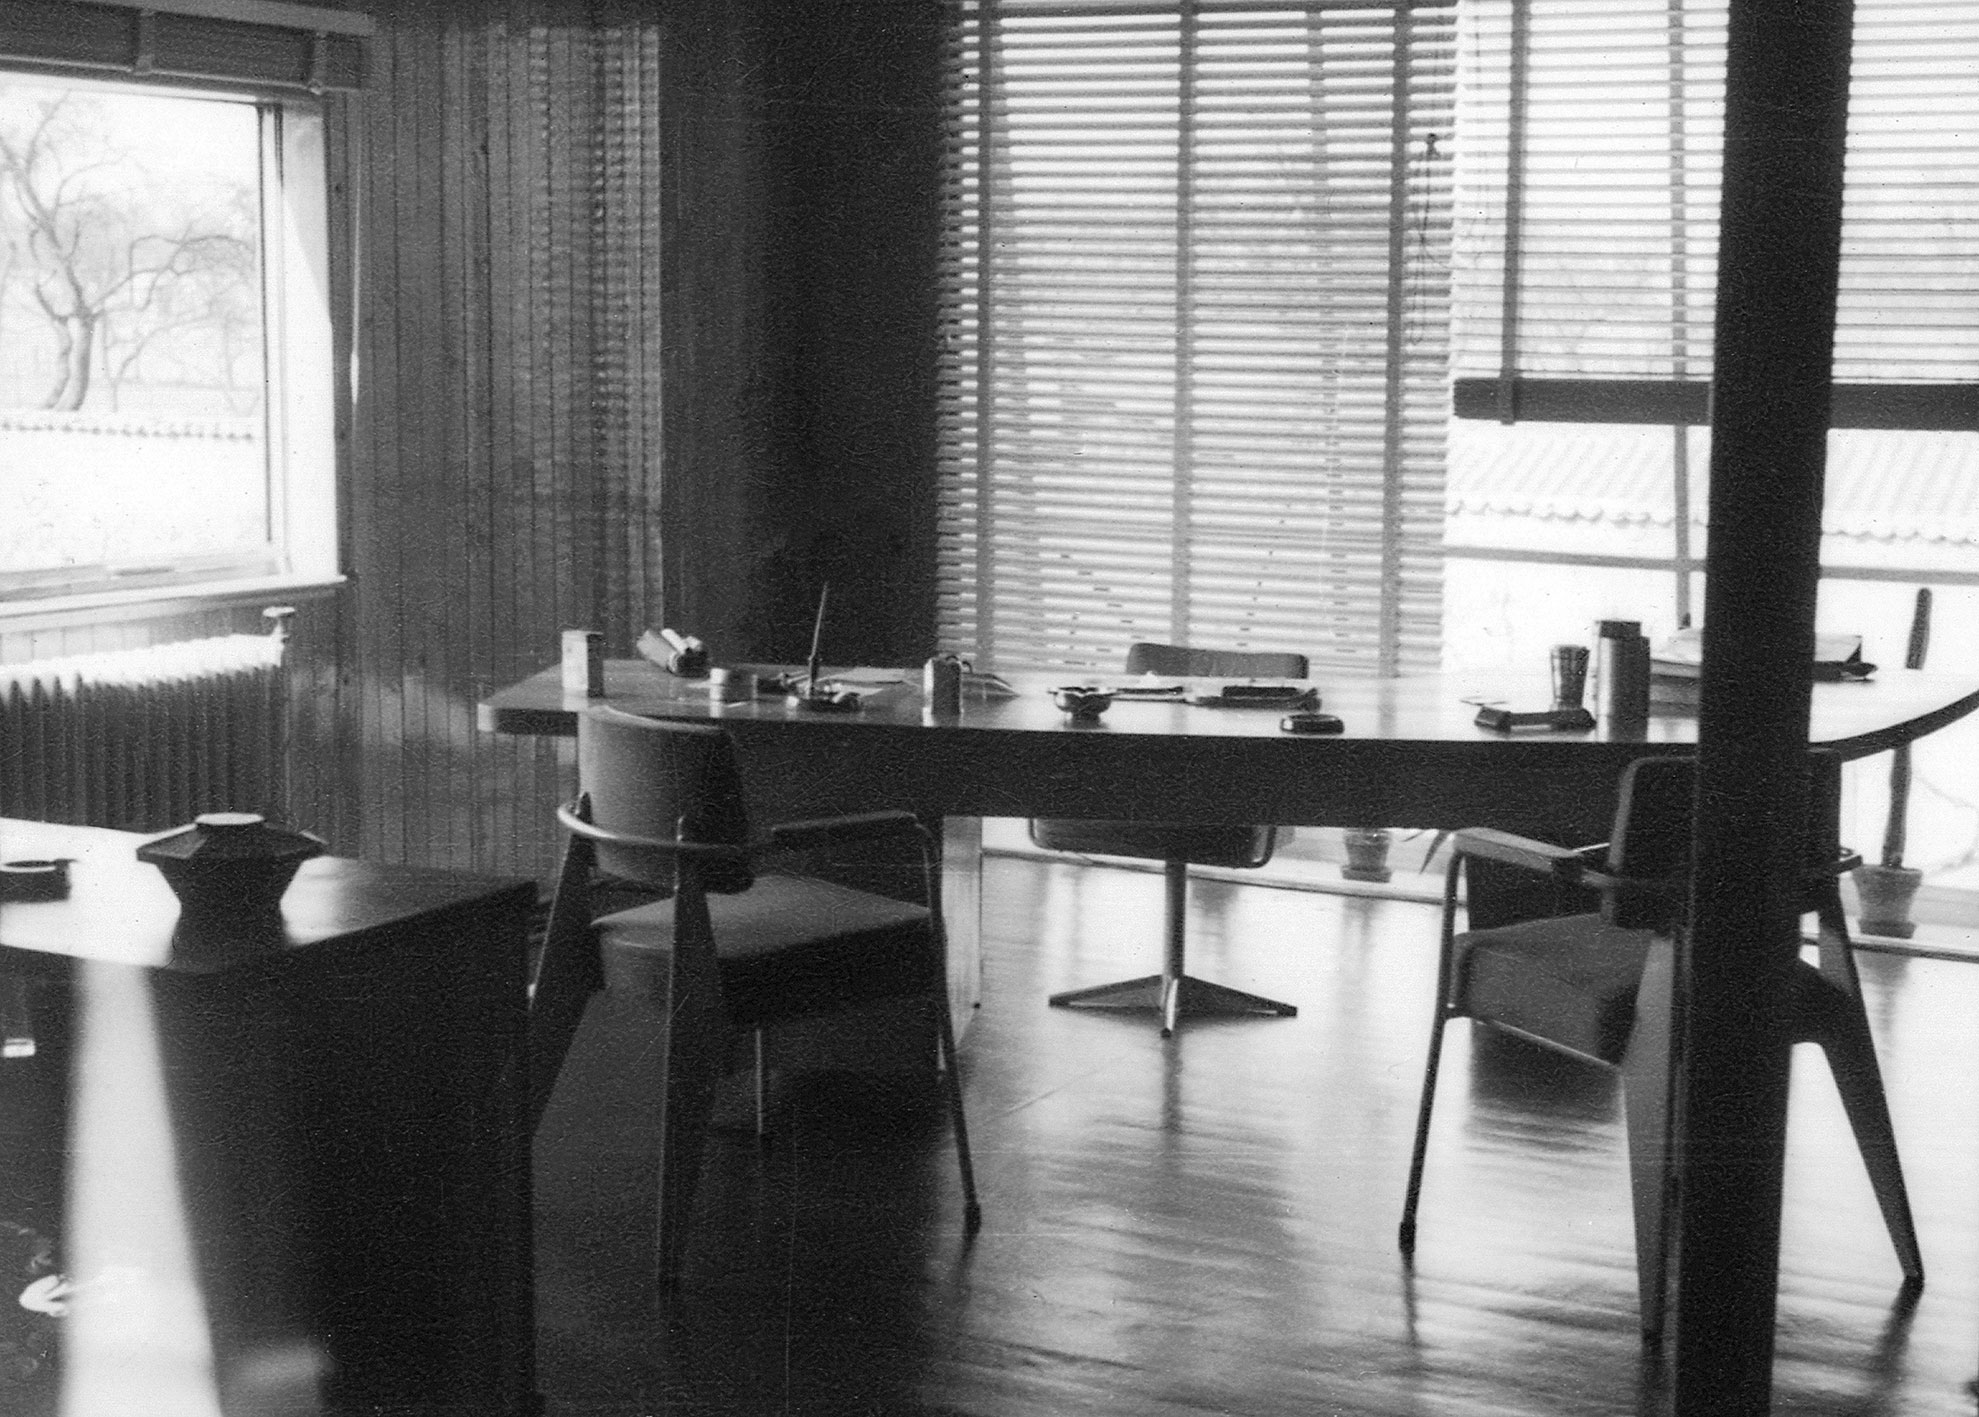 Bureaux de l’usine Ferembal, Nancy (H. Prouvé, arch., 1949). Le bureau du directeur, meublé de fauteuils Bridge FB 11, d’un bureau Présidence et d’un fauteuil pivotant FP 11.